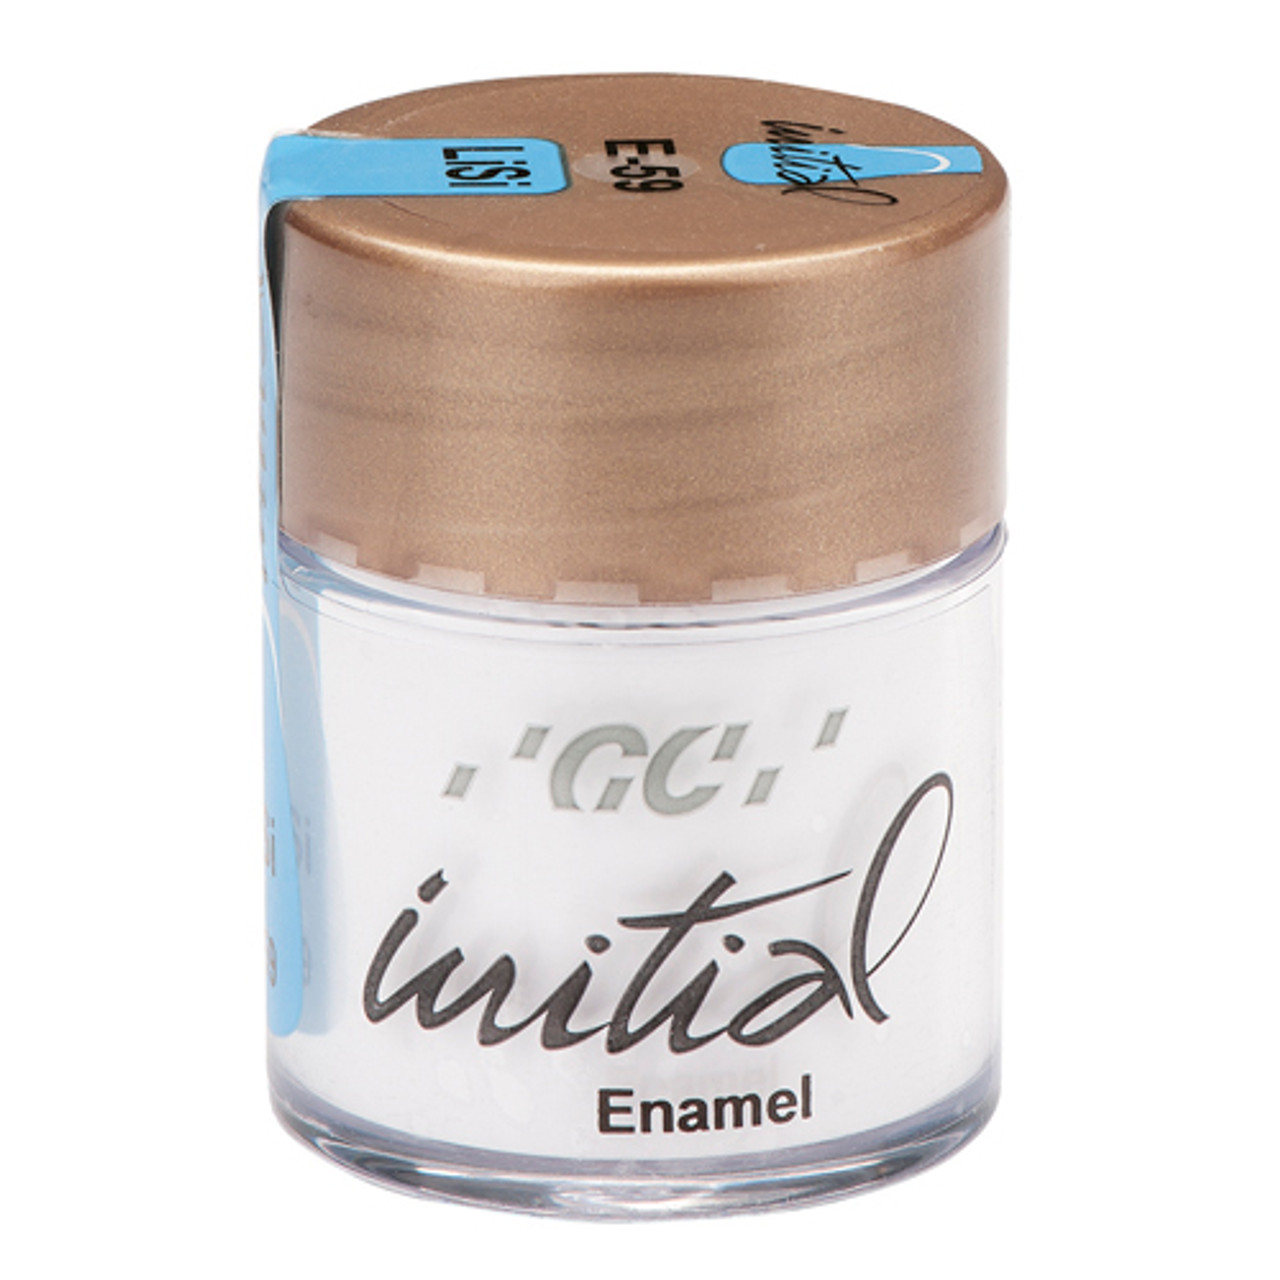 GC America - Initial LiSi Enamel Intensive (Grey)